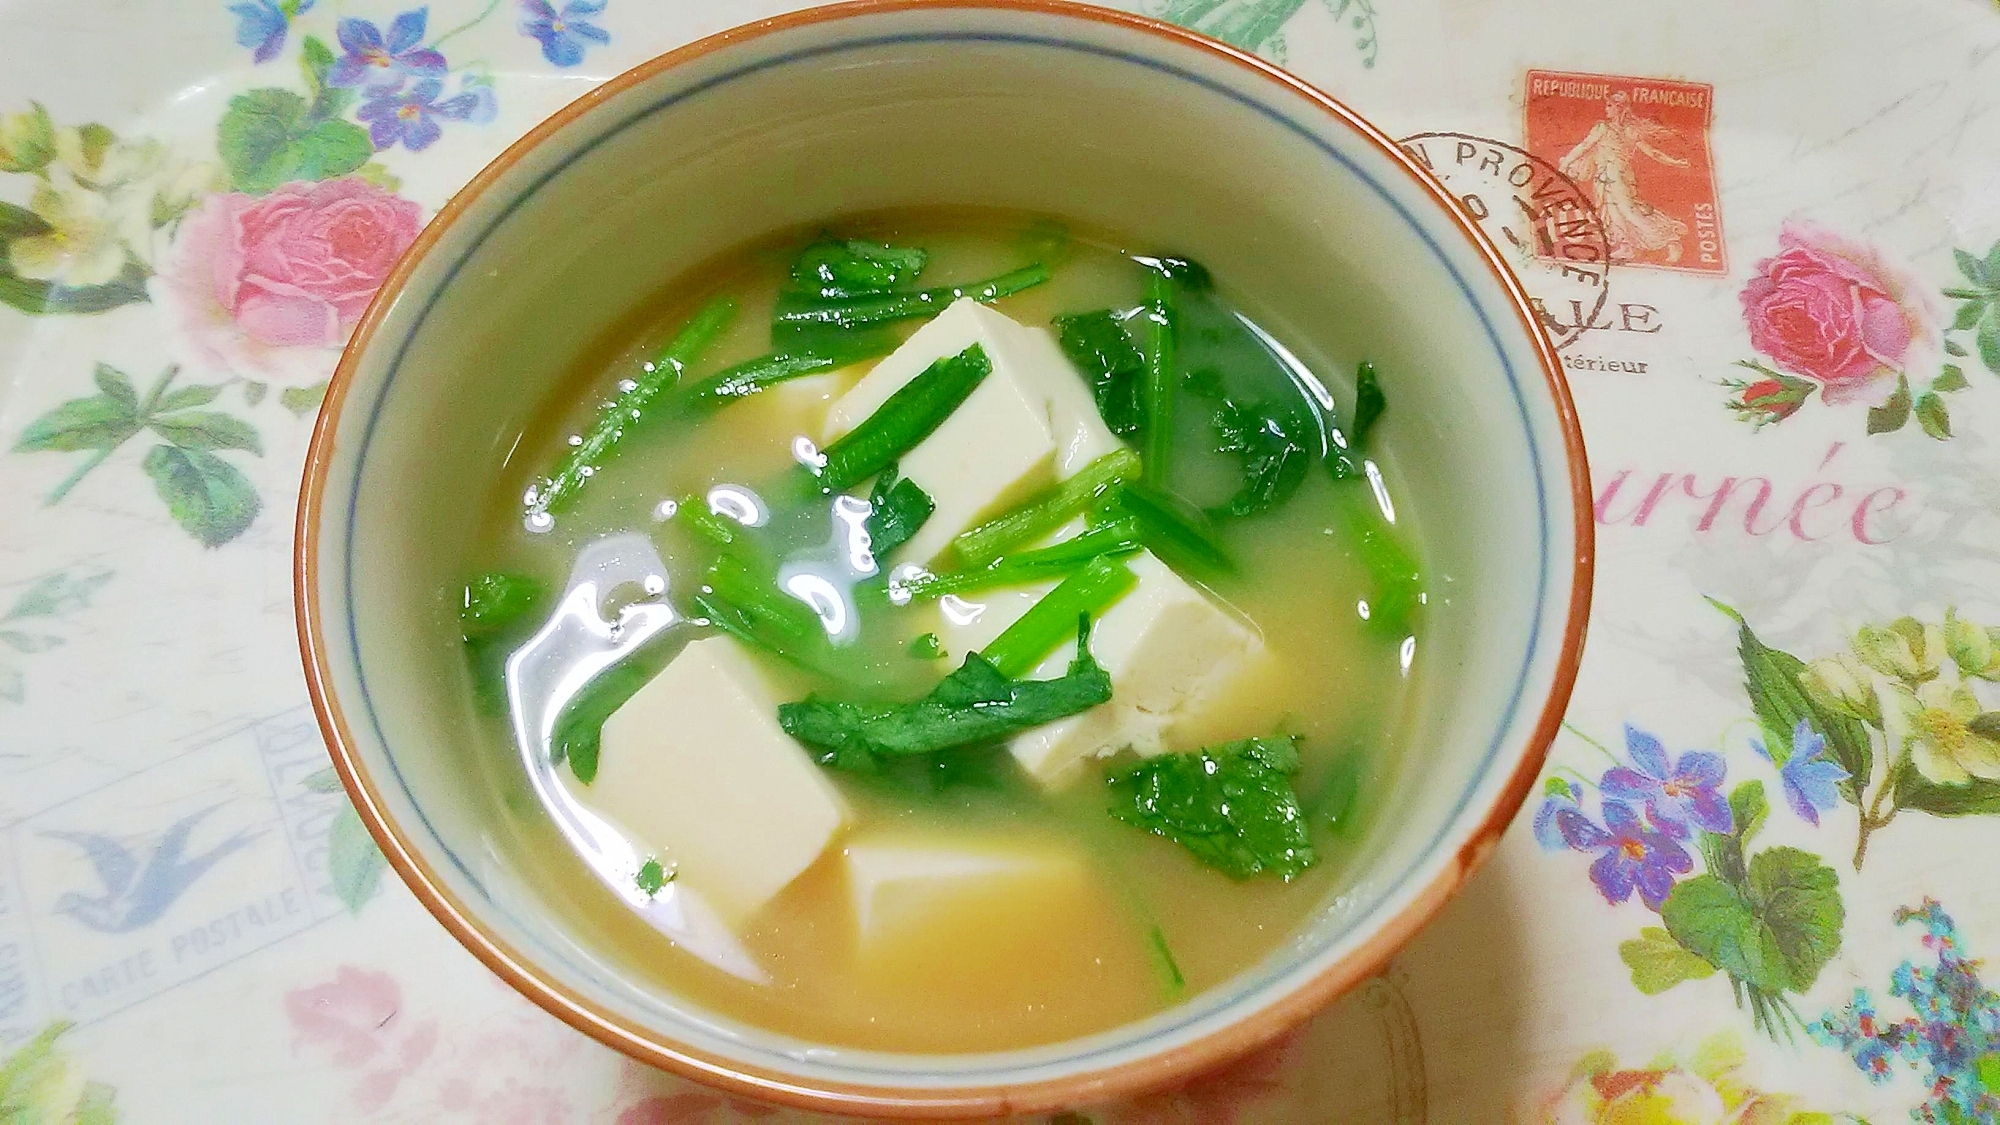 春菊と豆腐のお味噌汁